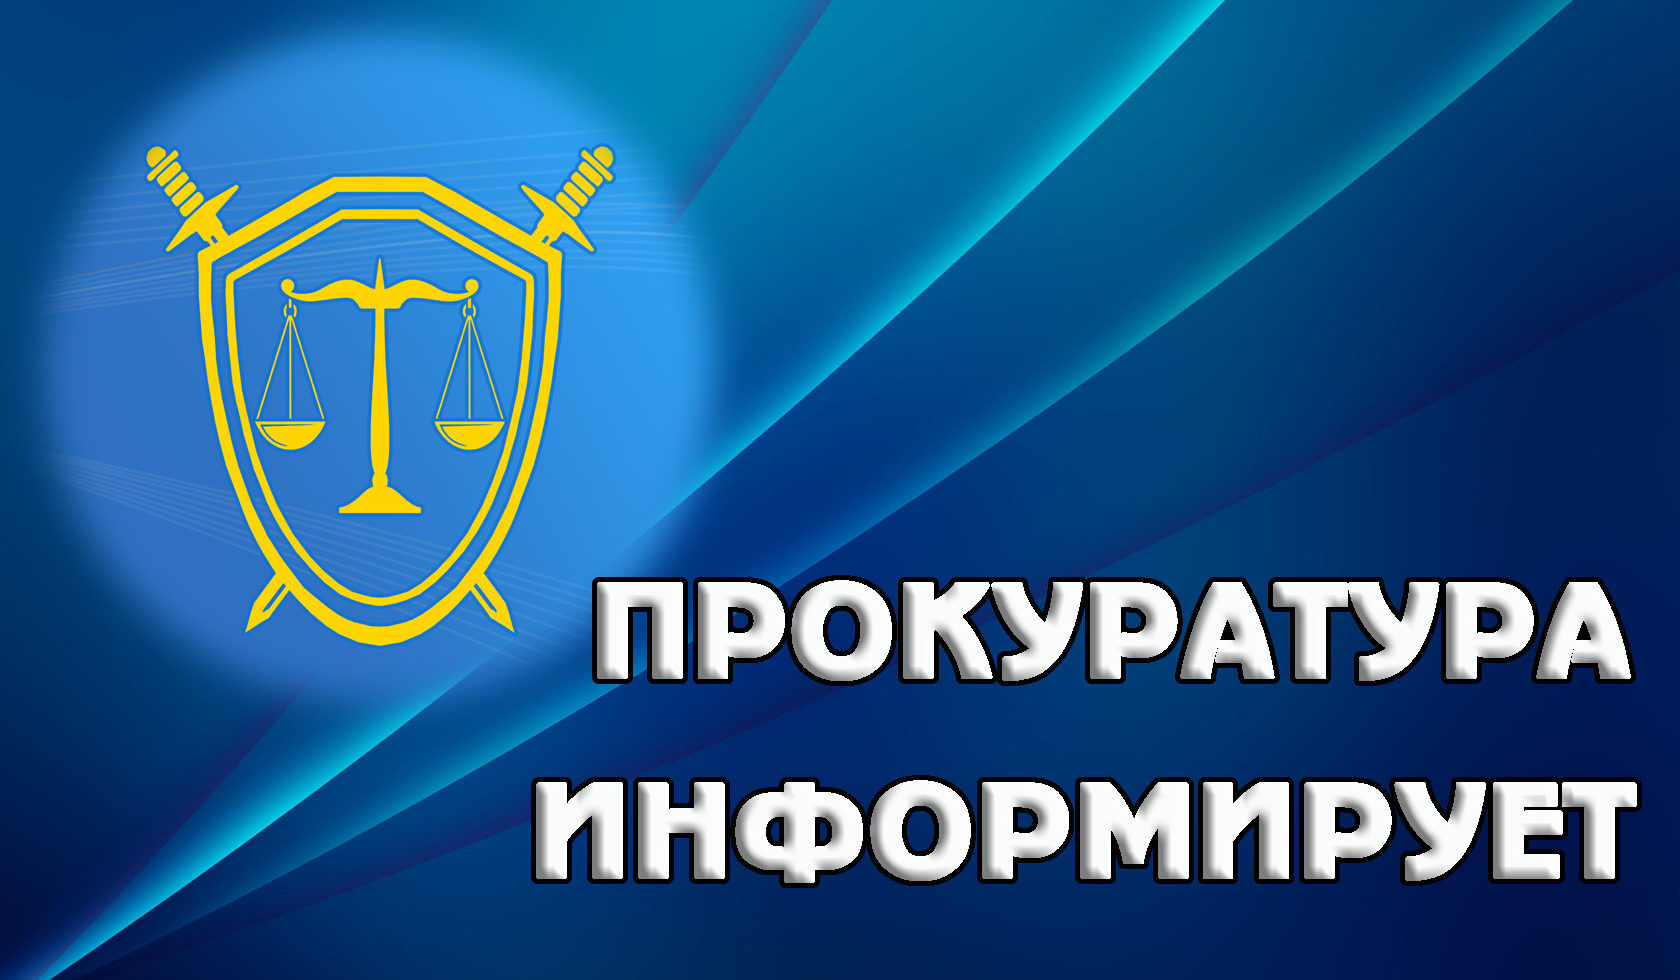 Прокуратура Засвияжского района г. Ульяновска информирует об изменениях в законодательстве в части оформления путевых листов автомобильного транспорта.